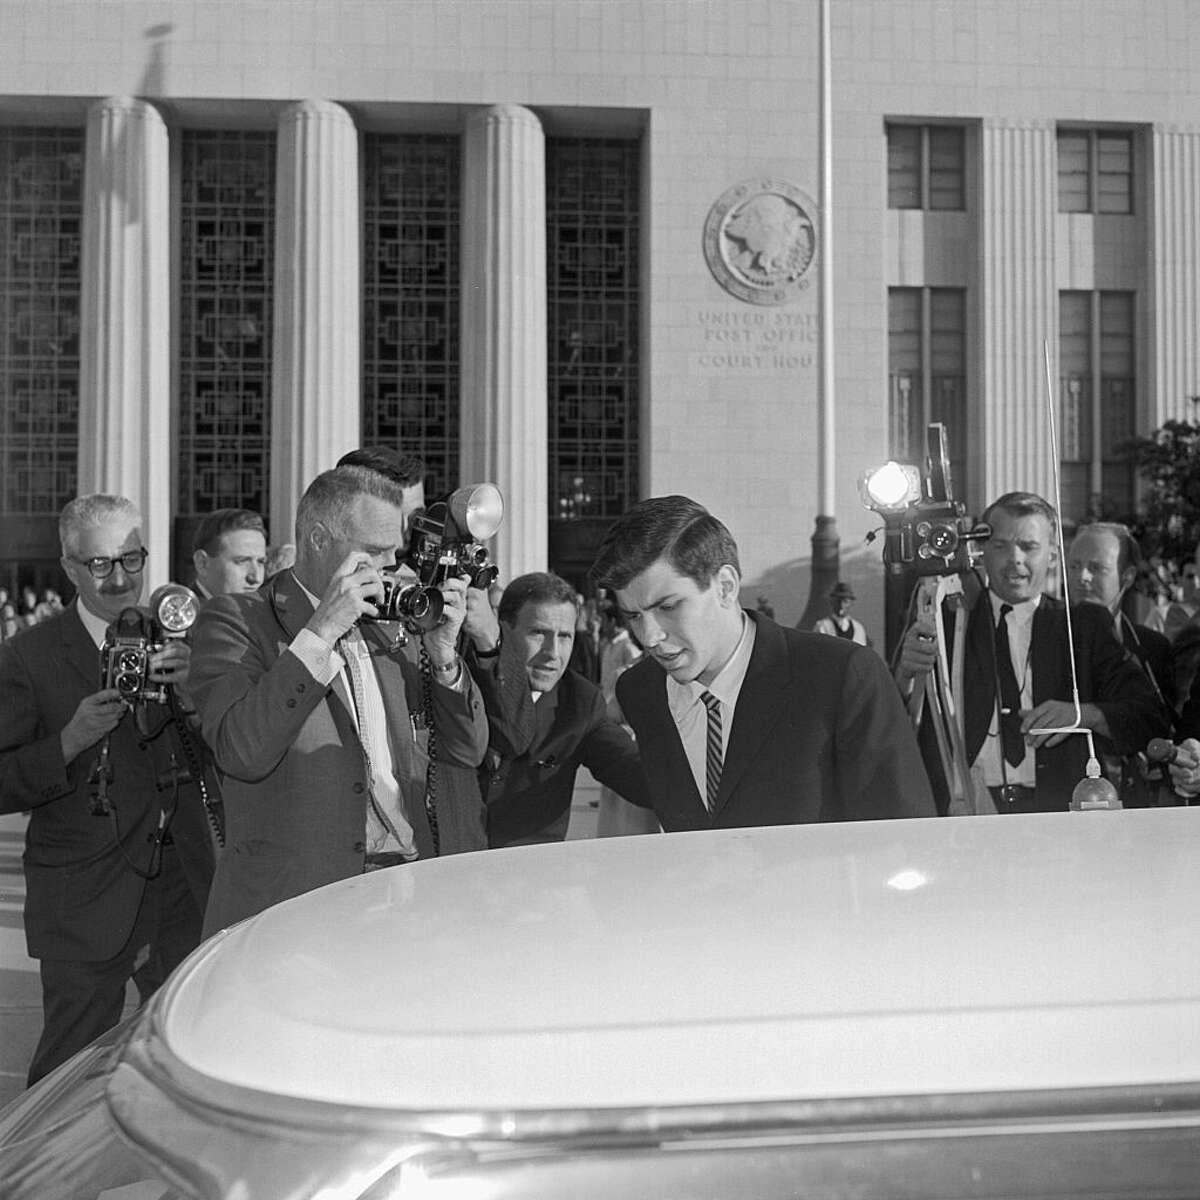 Frank Sinatra Jr., rodeado de periodistas y fotógrafos, sale del edificio del Tribunal Federal de Los Ángeles el 14 de febrero de 1964, después de un drama judicial enojado y lleno de emociones en el que Sinatra Jr. negó rotundamente la acusación de la abogada Gladys Towles Root de que él arregló su propio "pequeño complot de secuestro" ganar fama y publicidad.